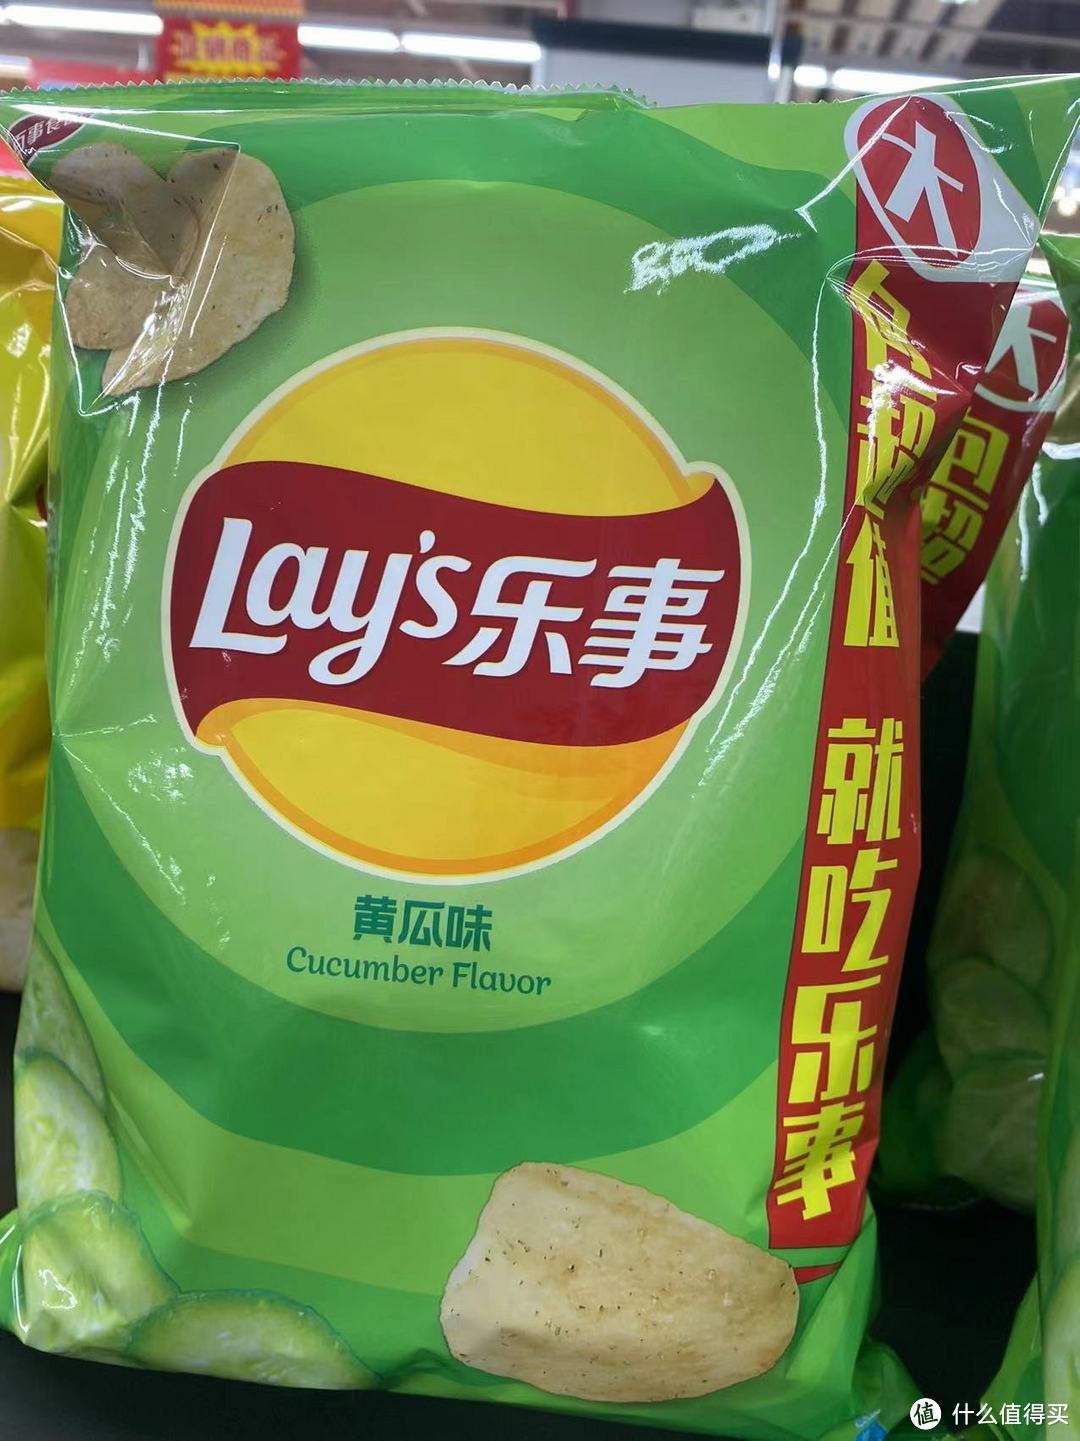 乐事黄瓜味薯片是乐事（Lay's）品牌推出的一种口味创新薯片